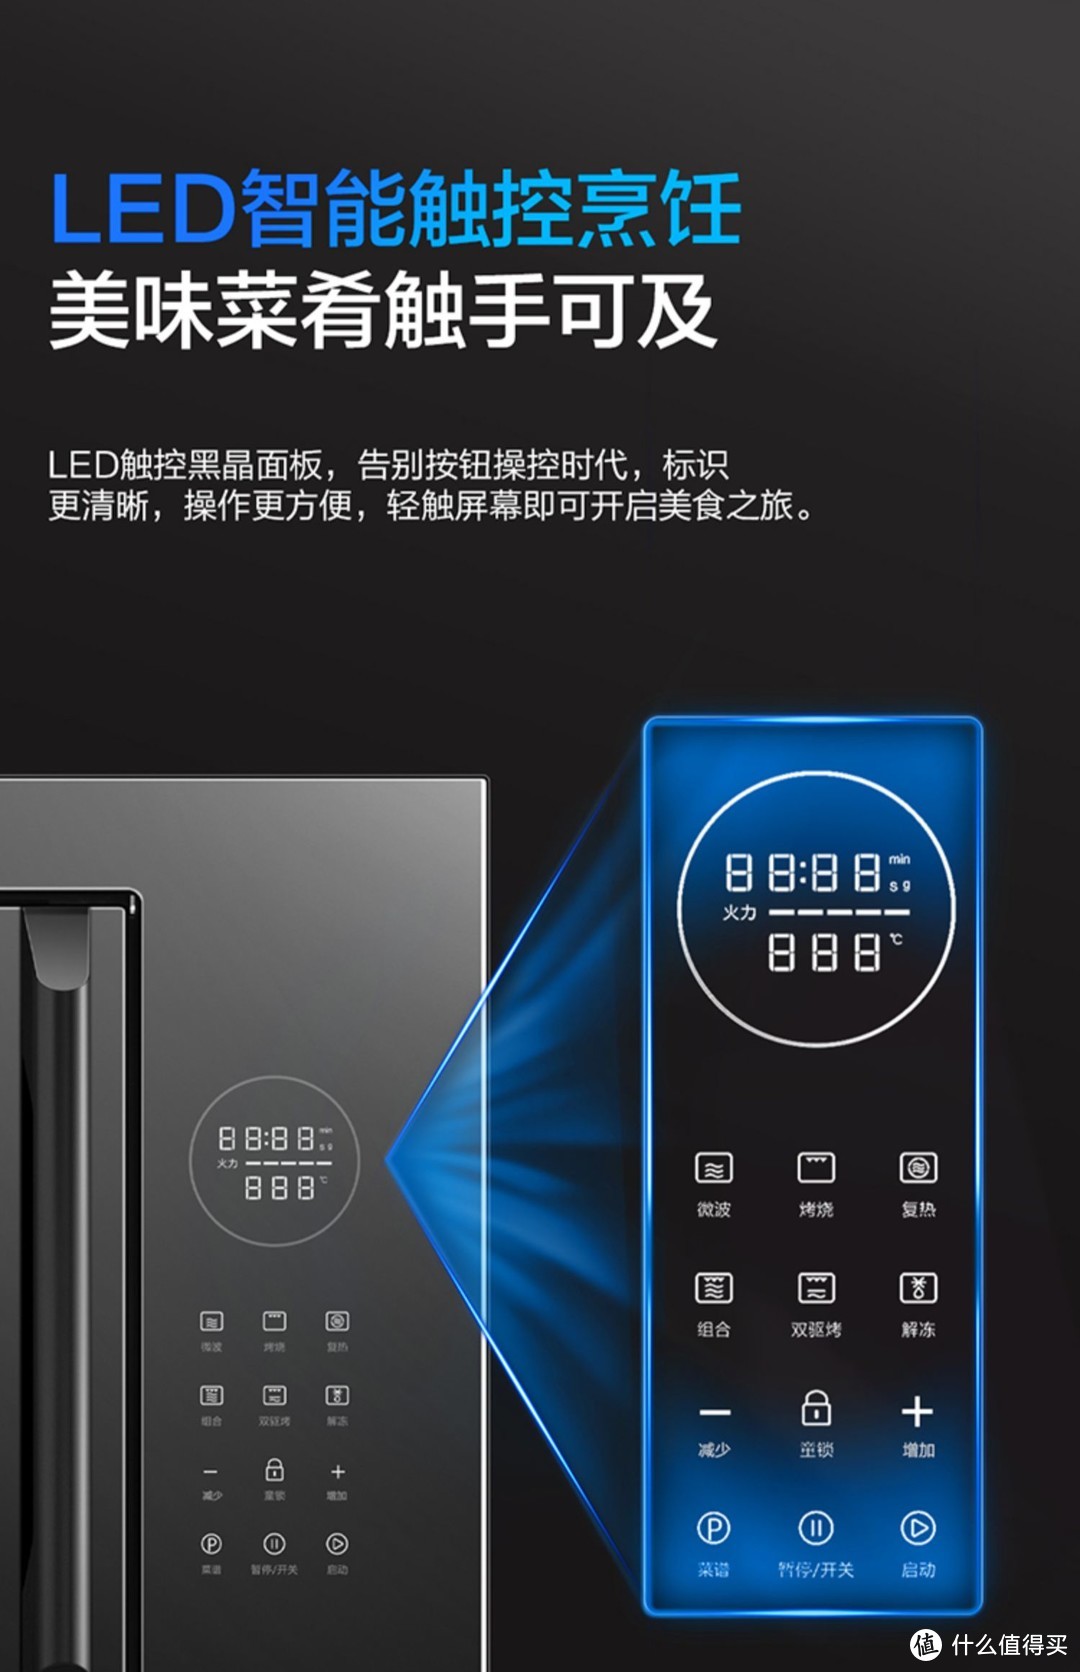 【双子星】老板官方旗舰店嵌入式微波炉烤箱家用CQ970A微烤一体机